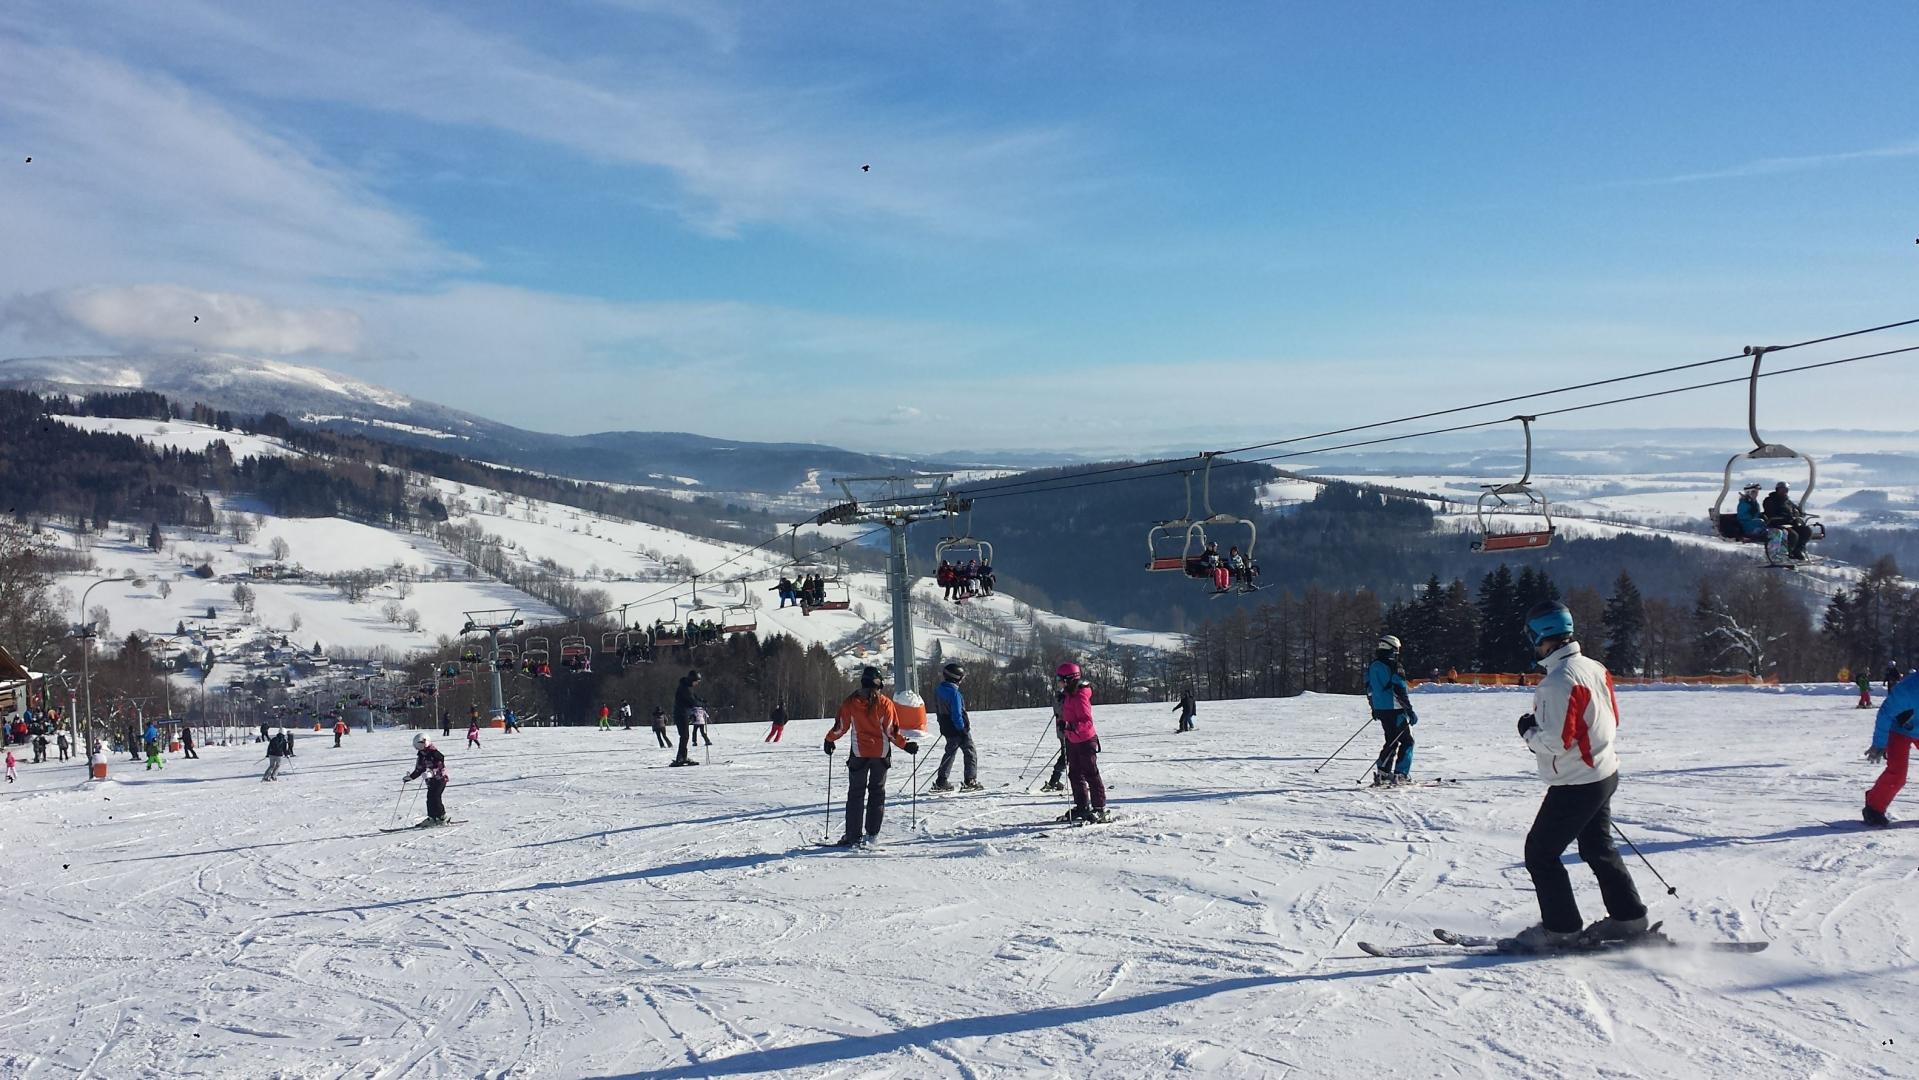 Zimowy urlop dla dwóch osób w Karkonoszach - jazda na nartach, wellness, świetne jedzenie   od 6.399, - CZK